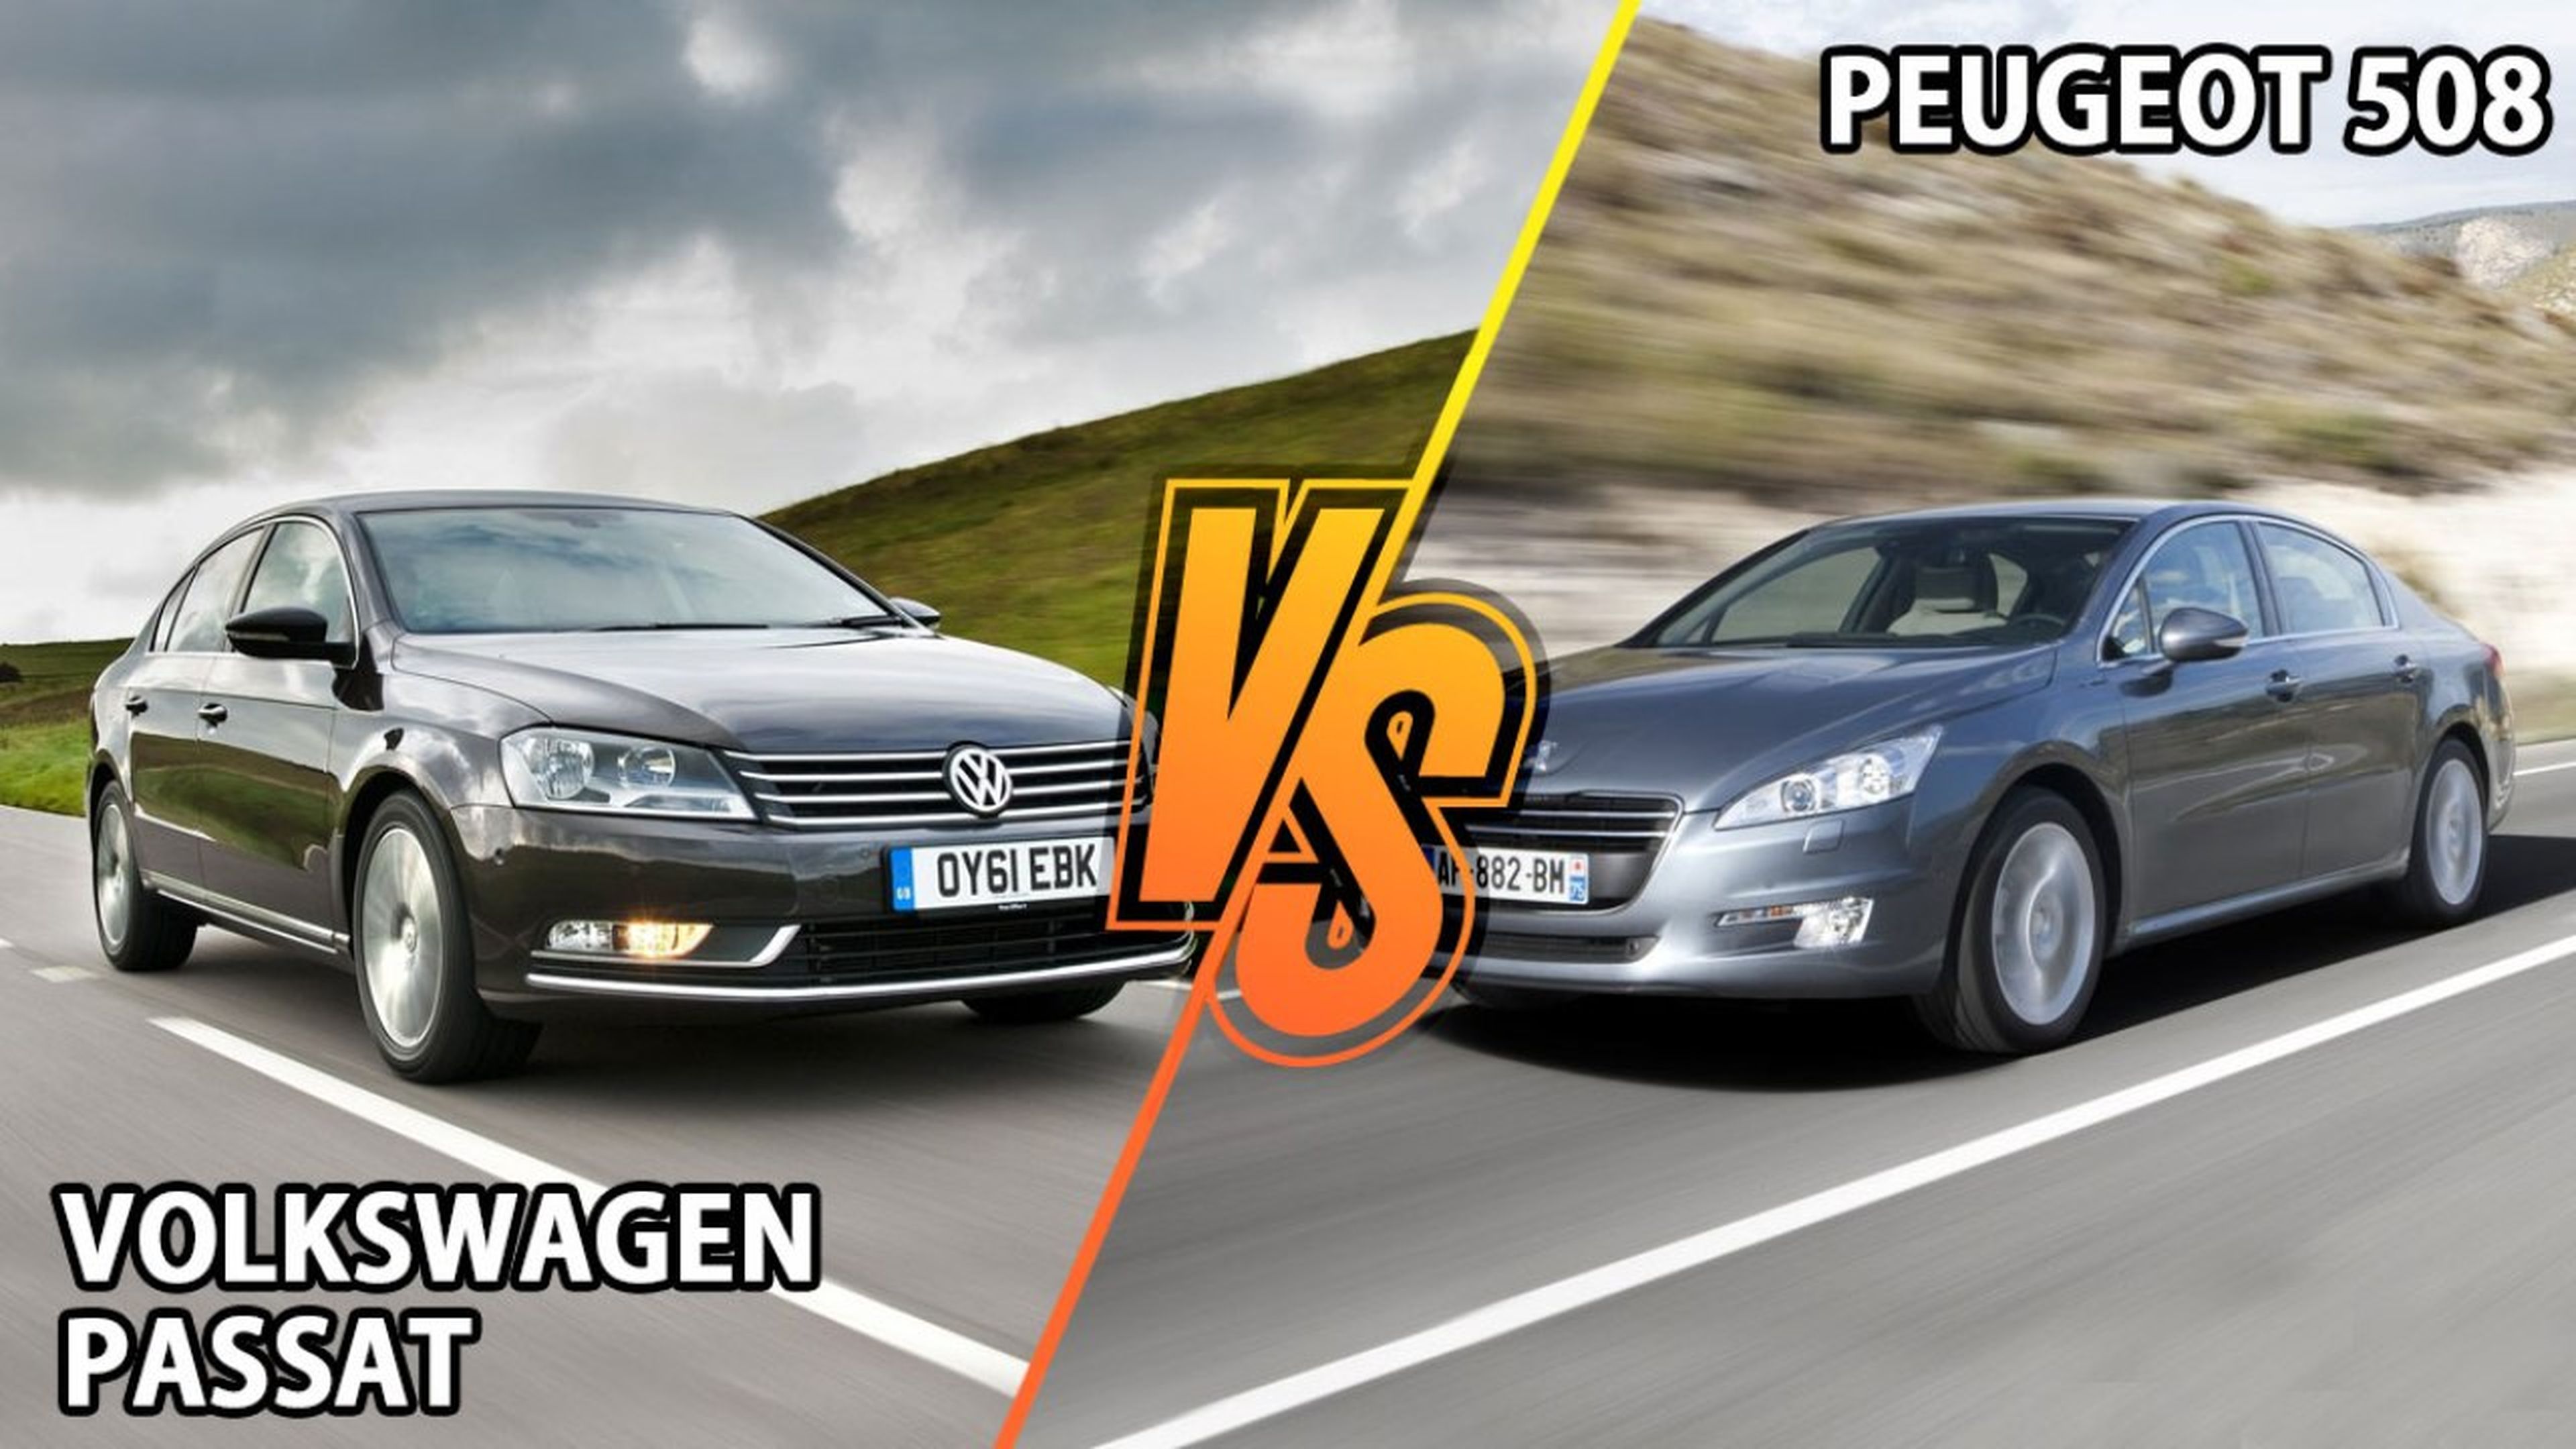 Peugeot 508 vs Volkswagen Passat